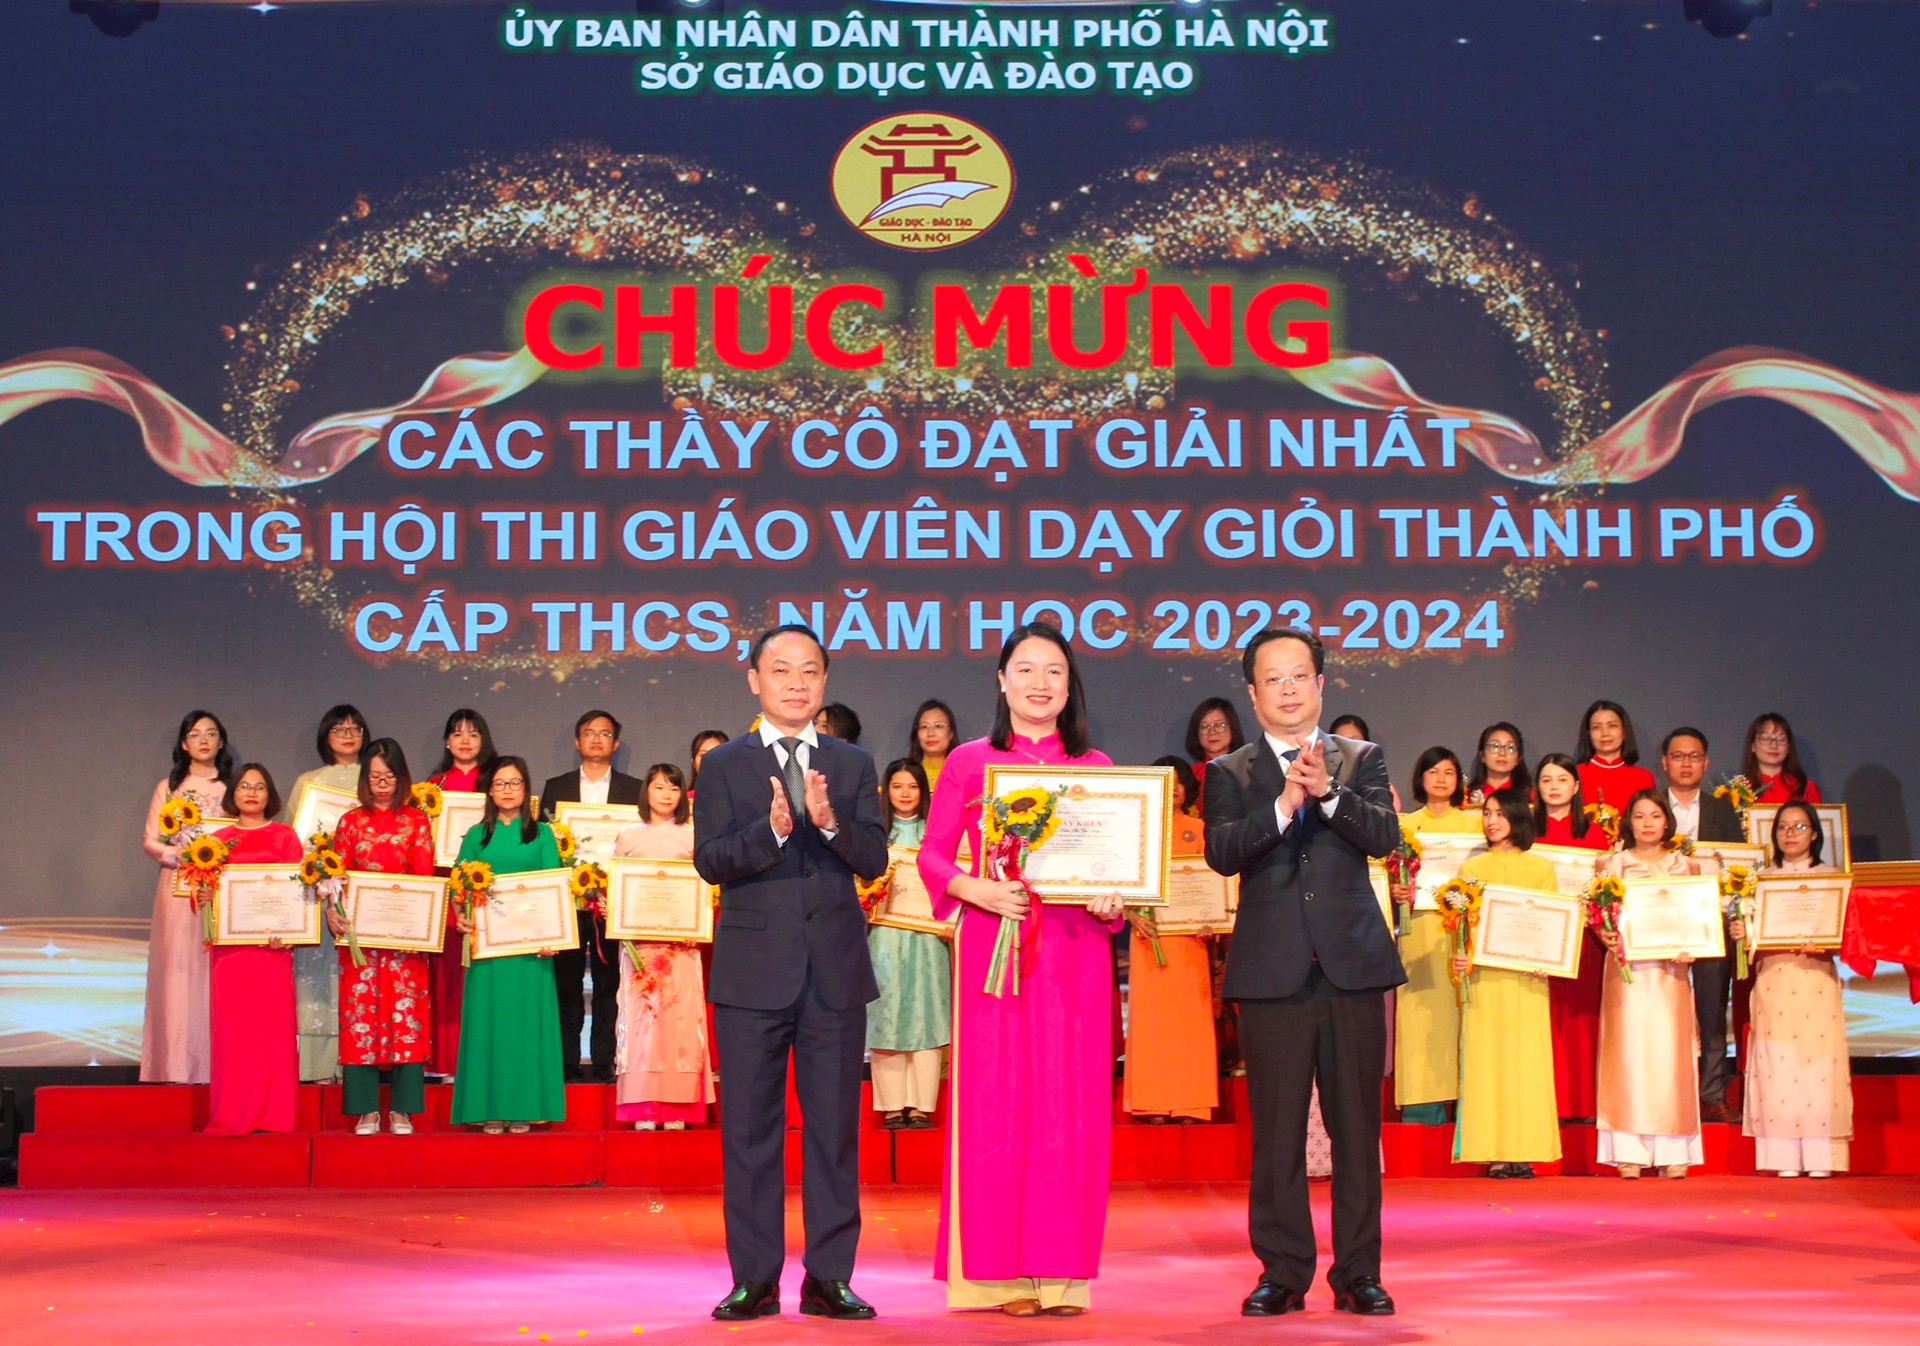 Giáo dục pháp luật - Hà Nội: 179 giáo viên dạy giỏi cấp thành phố được tuyên dương, khen thưởng 